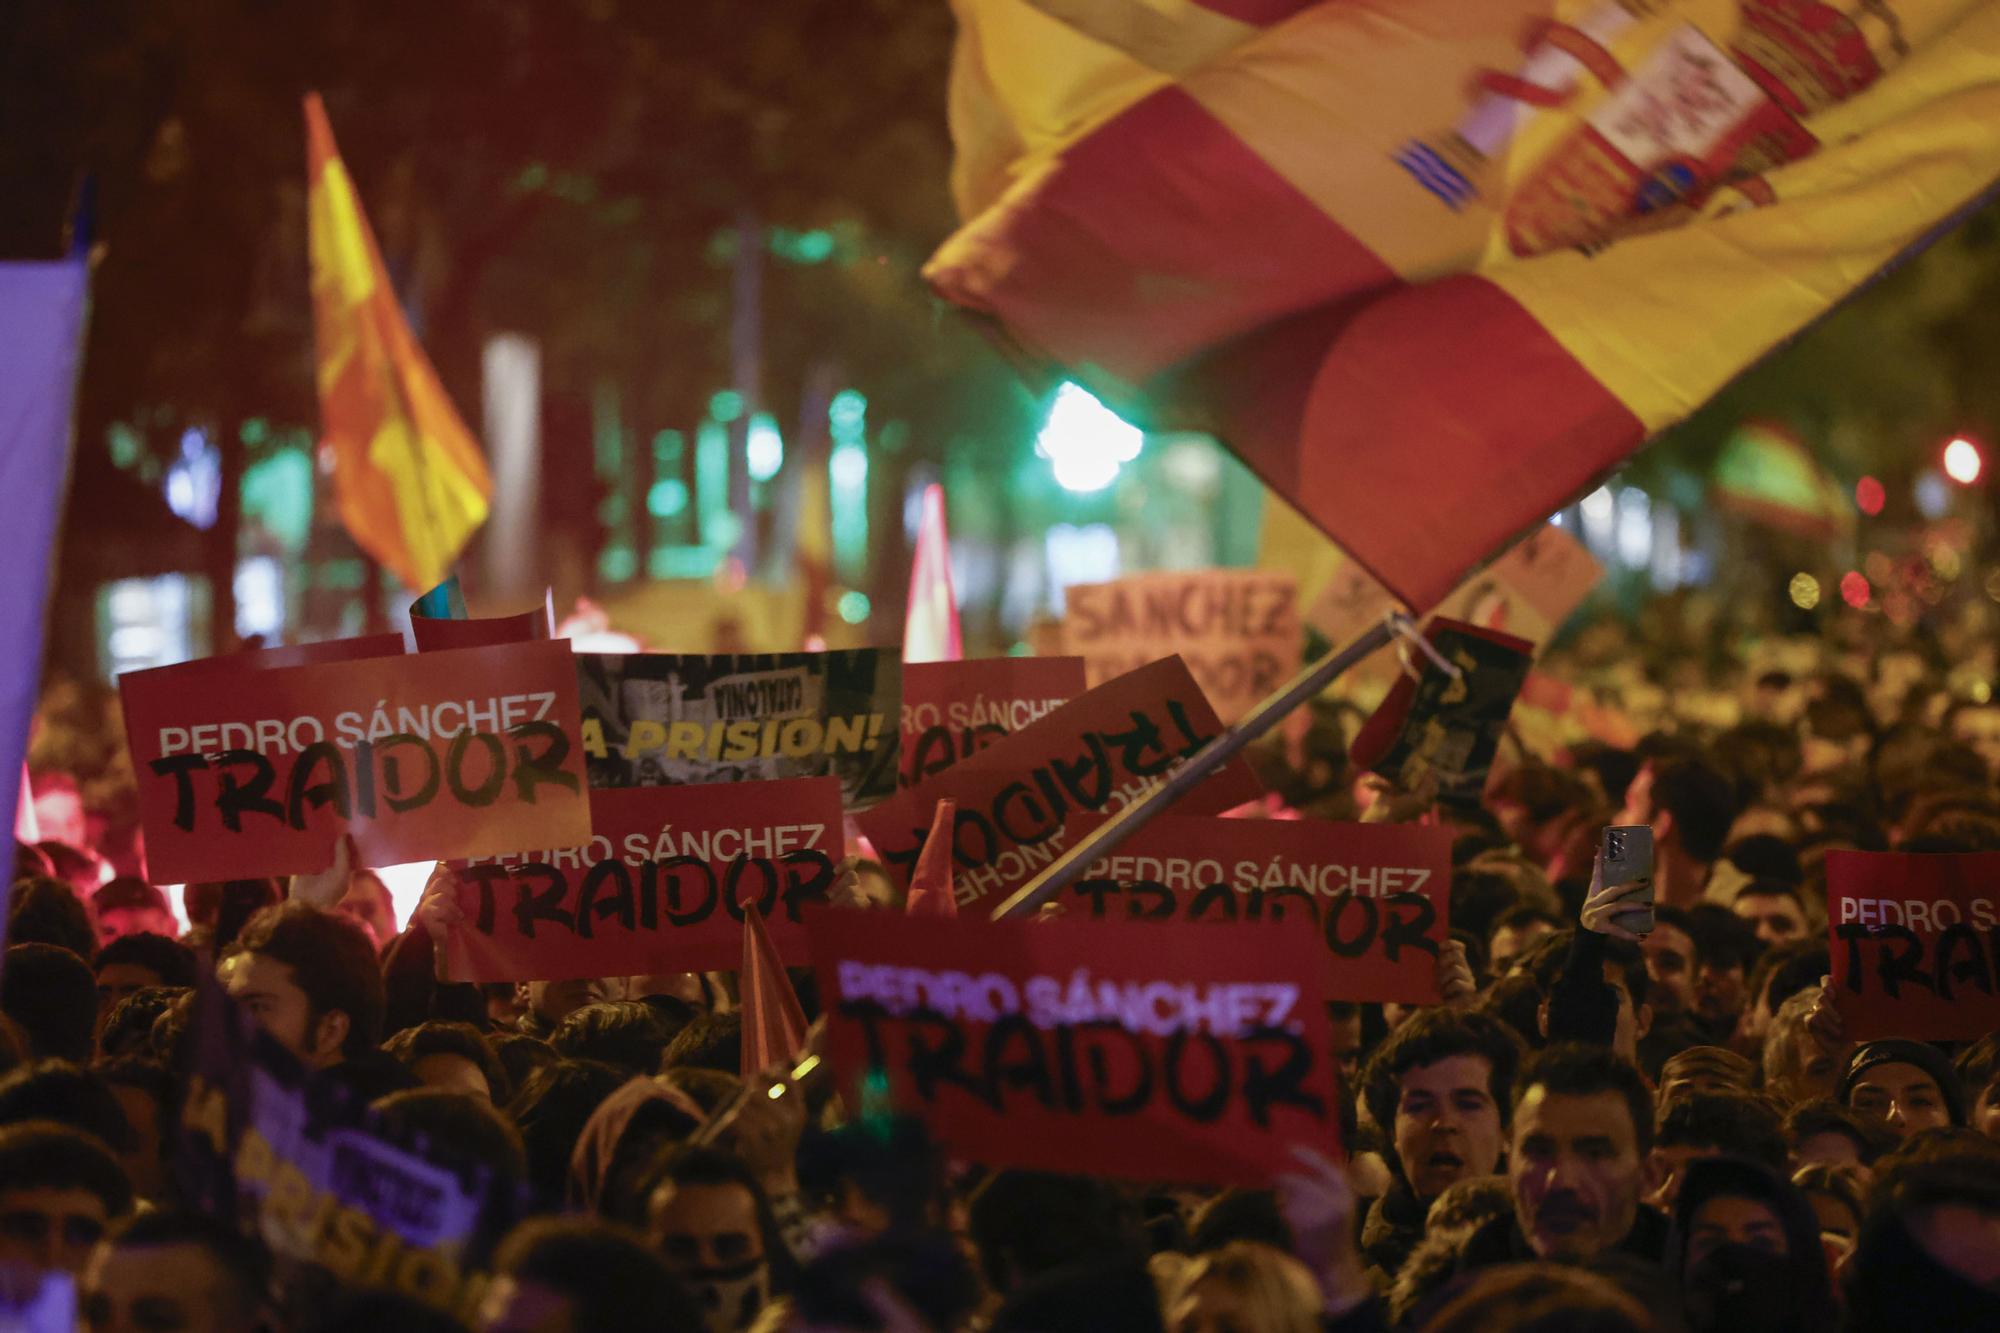 Nueva manifestación contra la amnistía frente a la sede del PSOE en Madrid